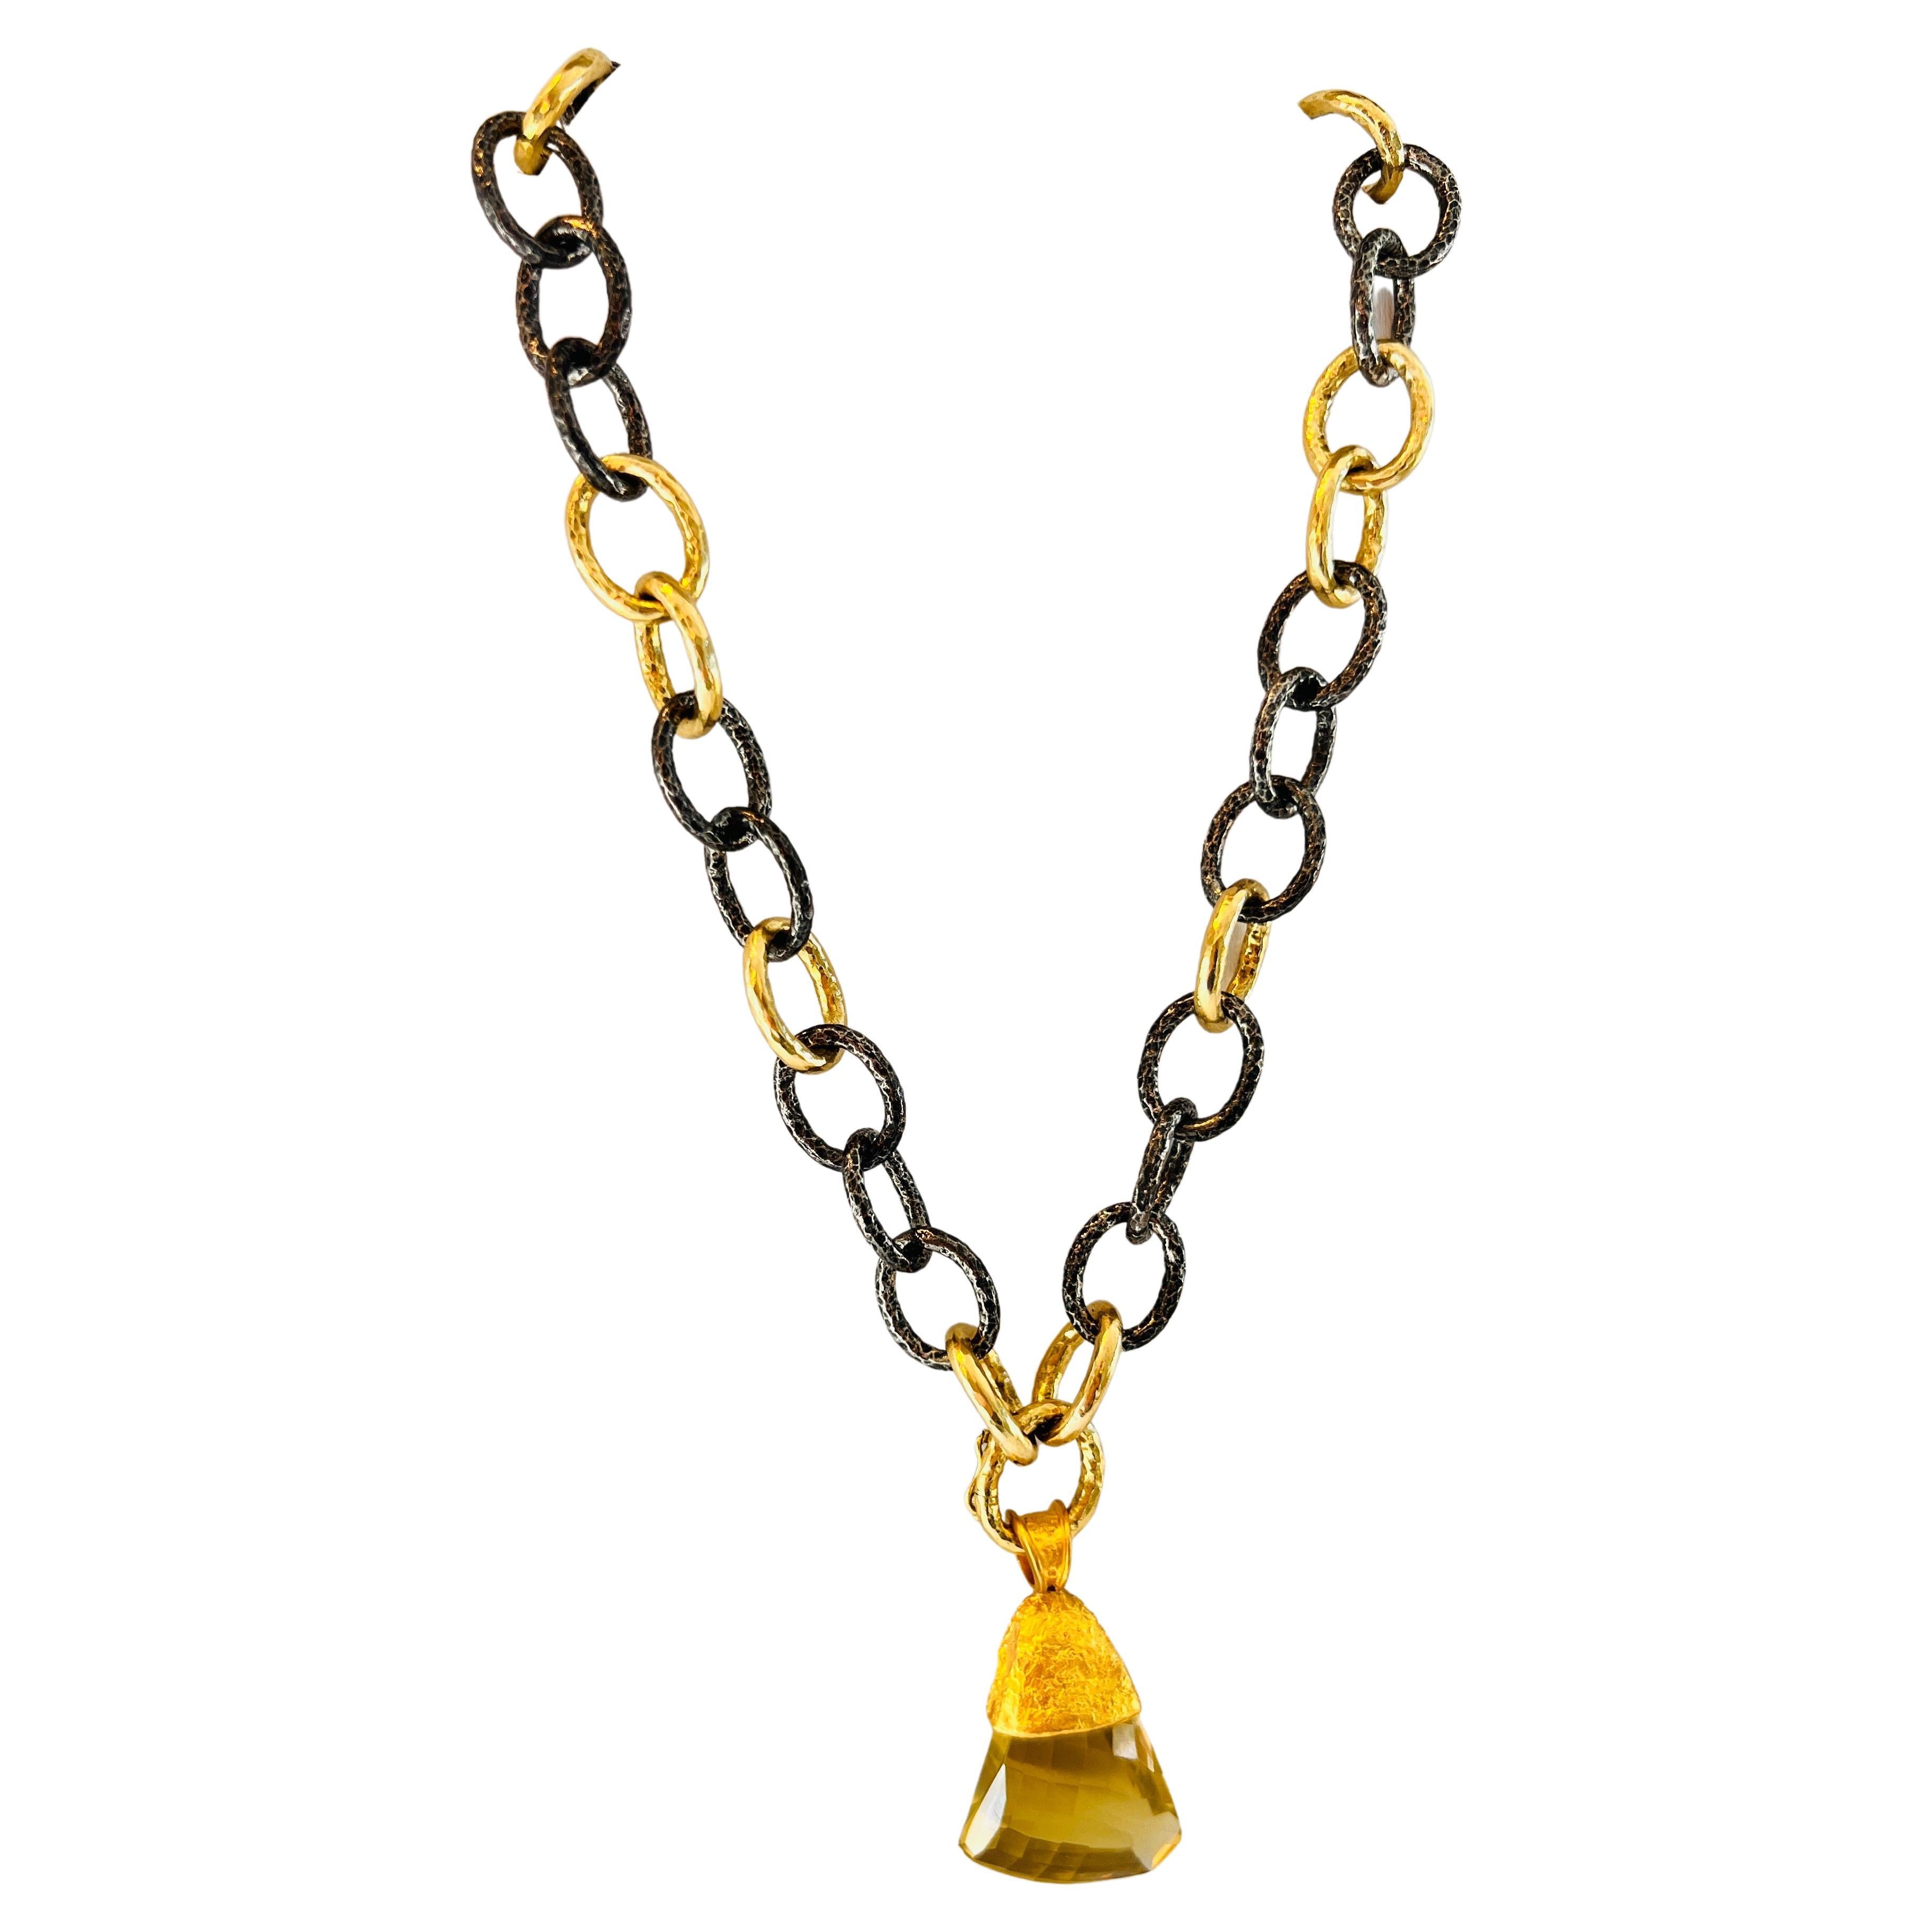 Halskette, 50/50, geschwärztes Silber und Gold, 16 Zoll, von Tagili